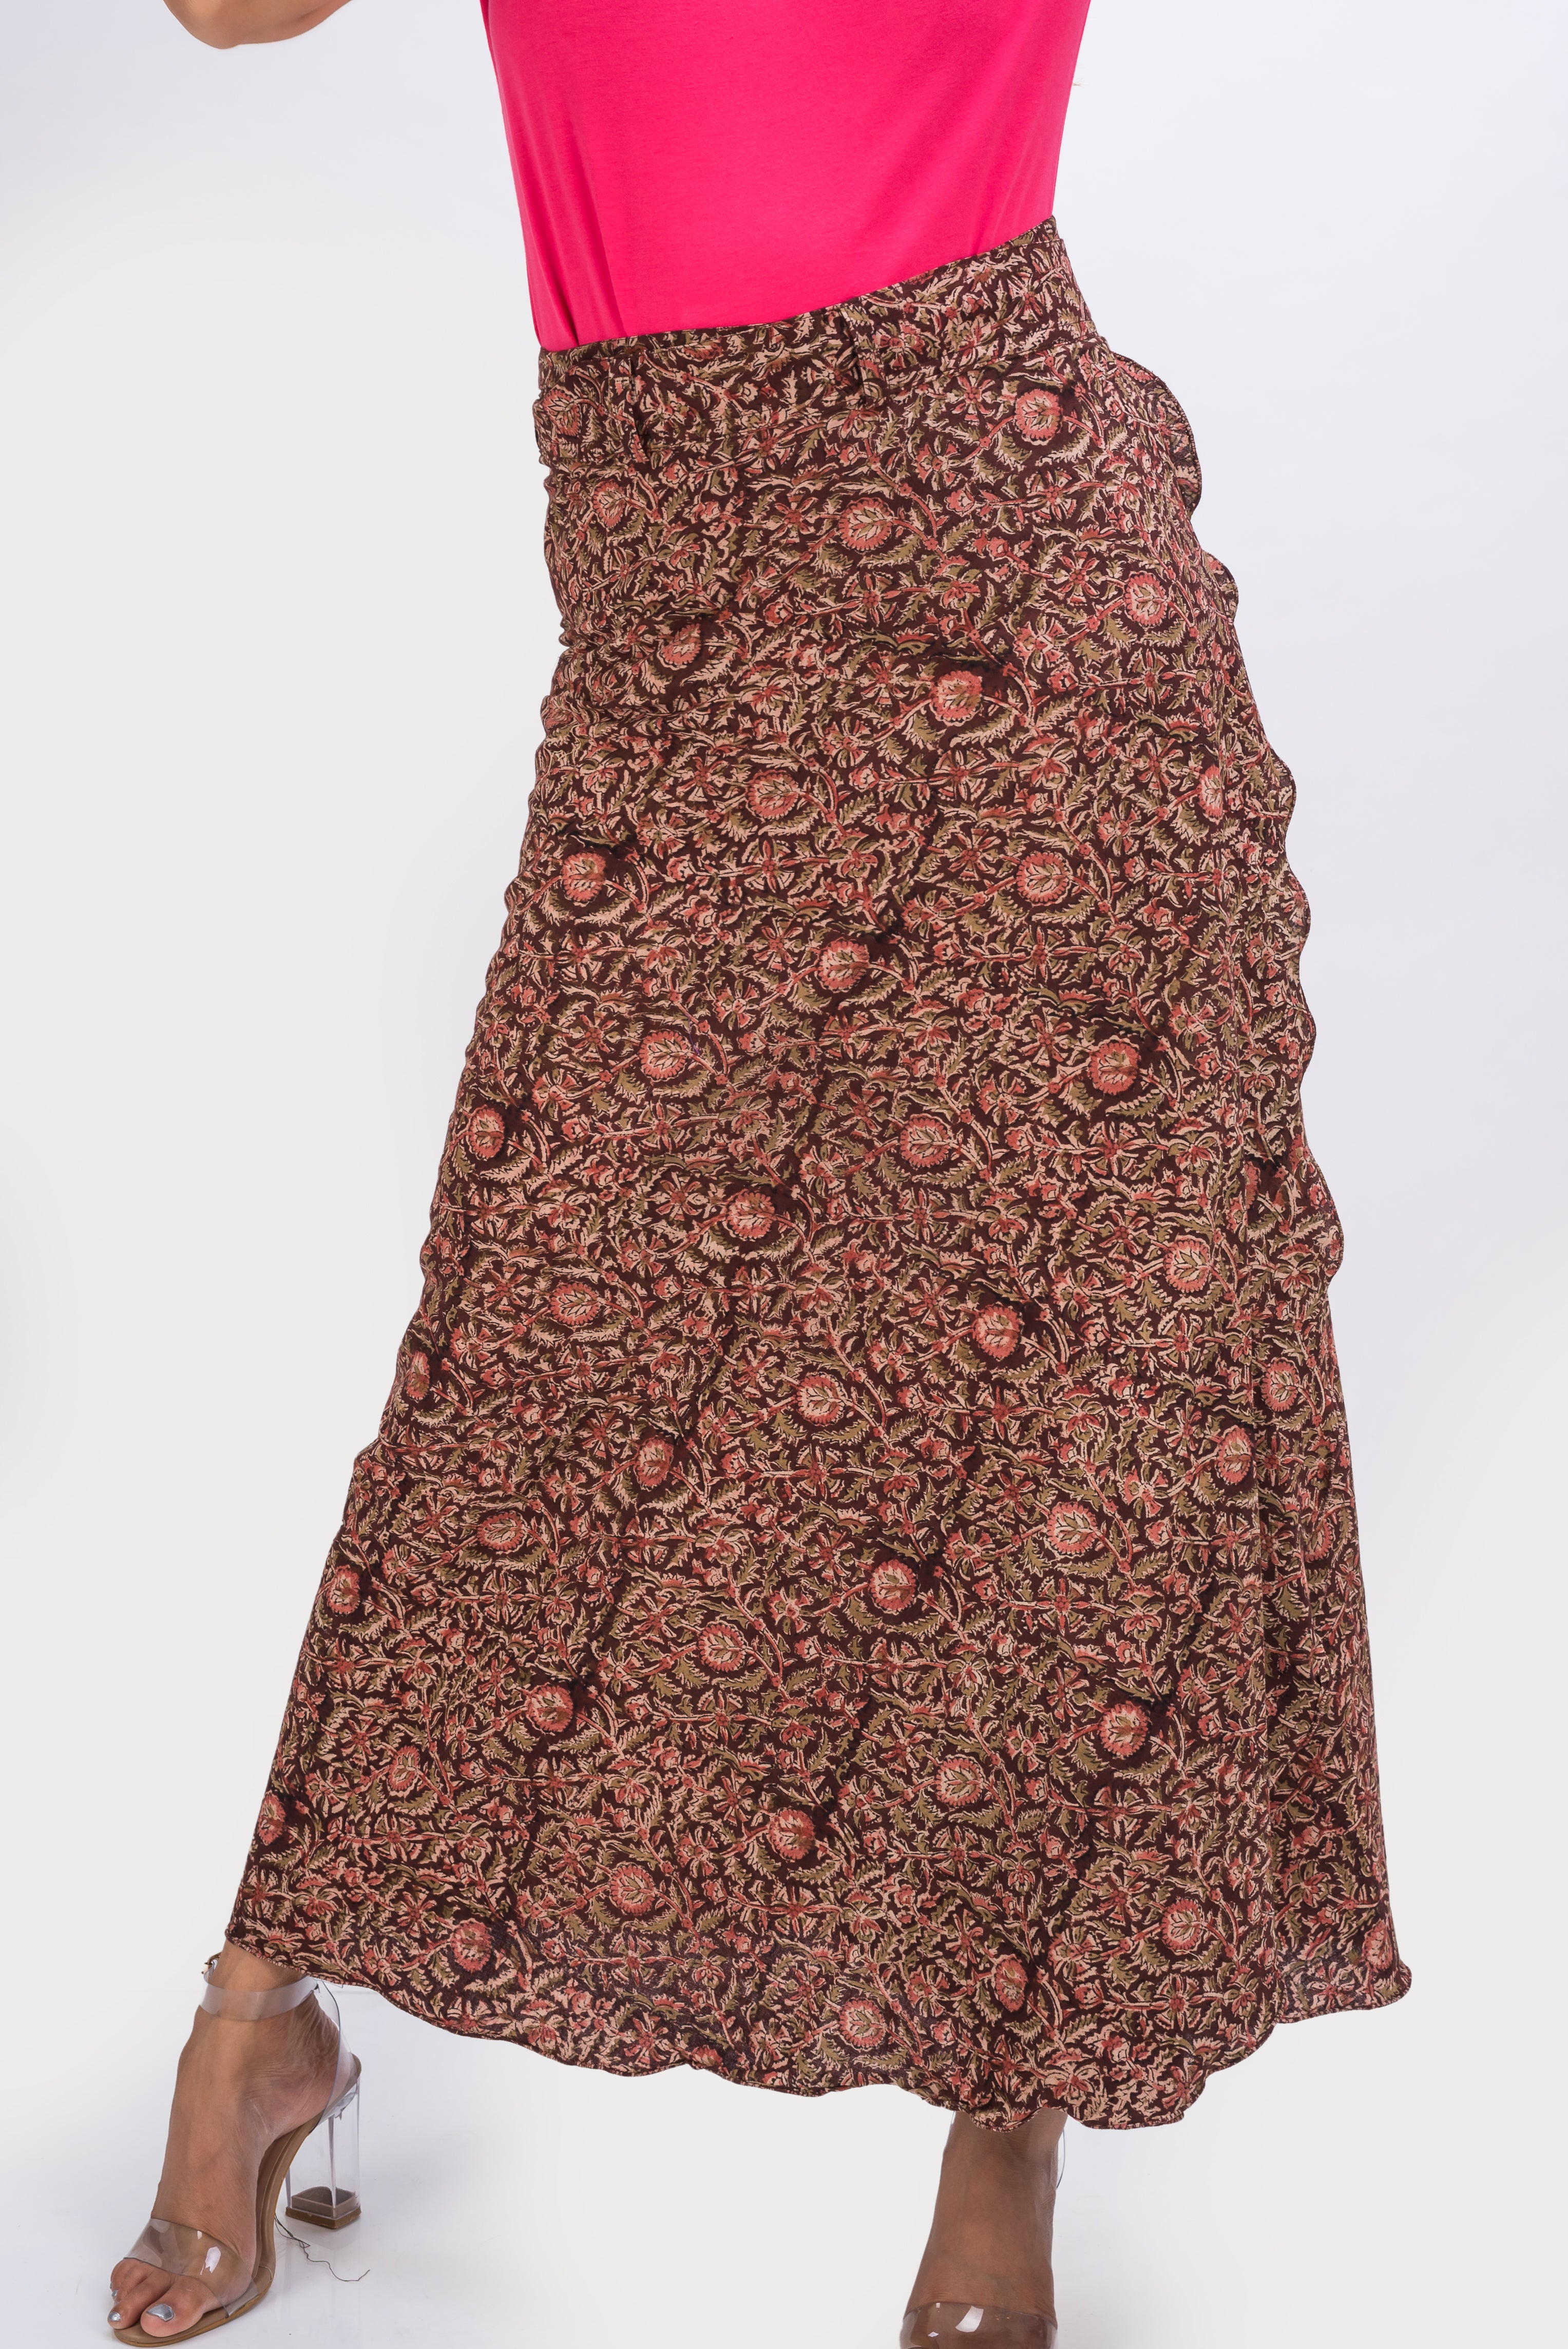 KK3011 Wrap Skirt - Flowers Brown